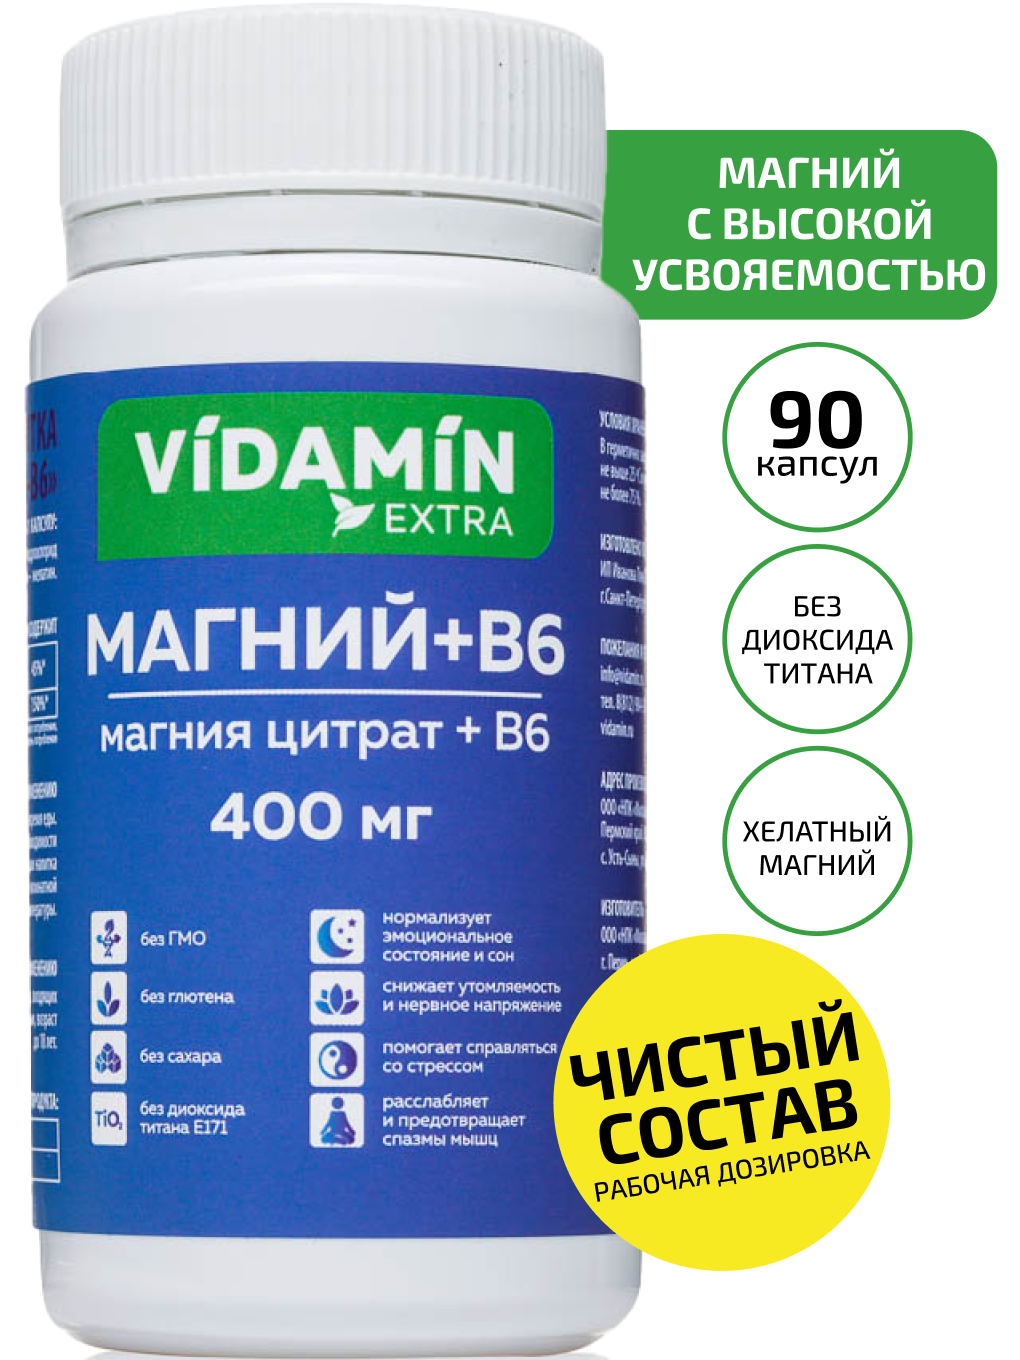 Магний В6 VIDAMIN EXTRA антистресс капсулы 400 мг 90 шт.